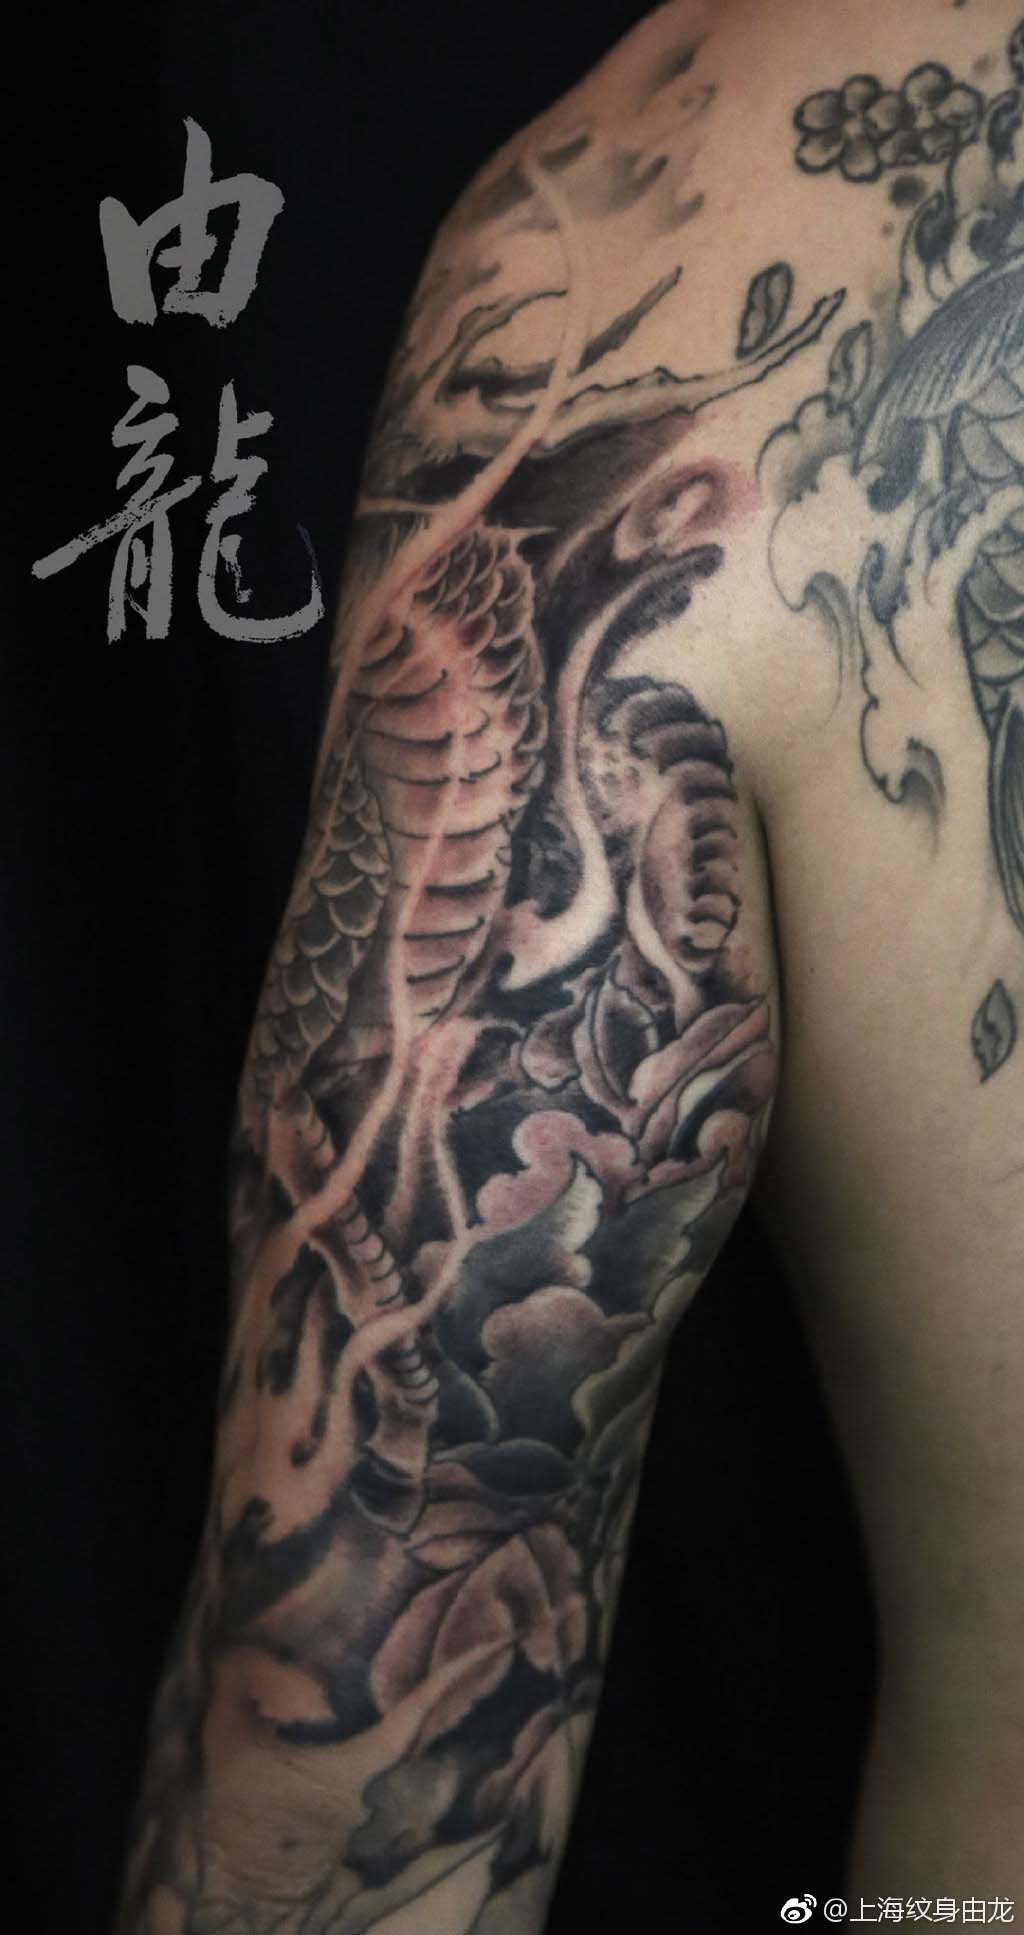 上海由龙纹身花臂麒麟纹身图案